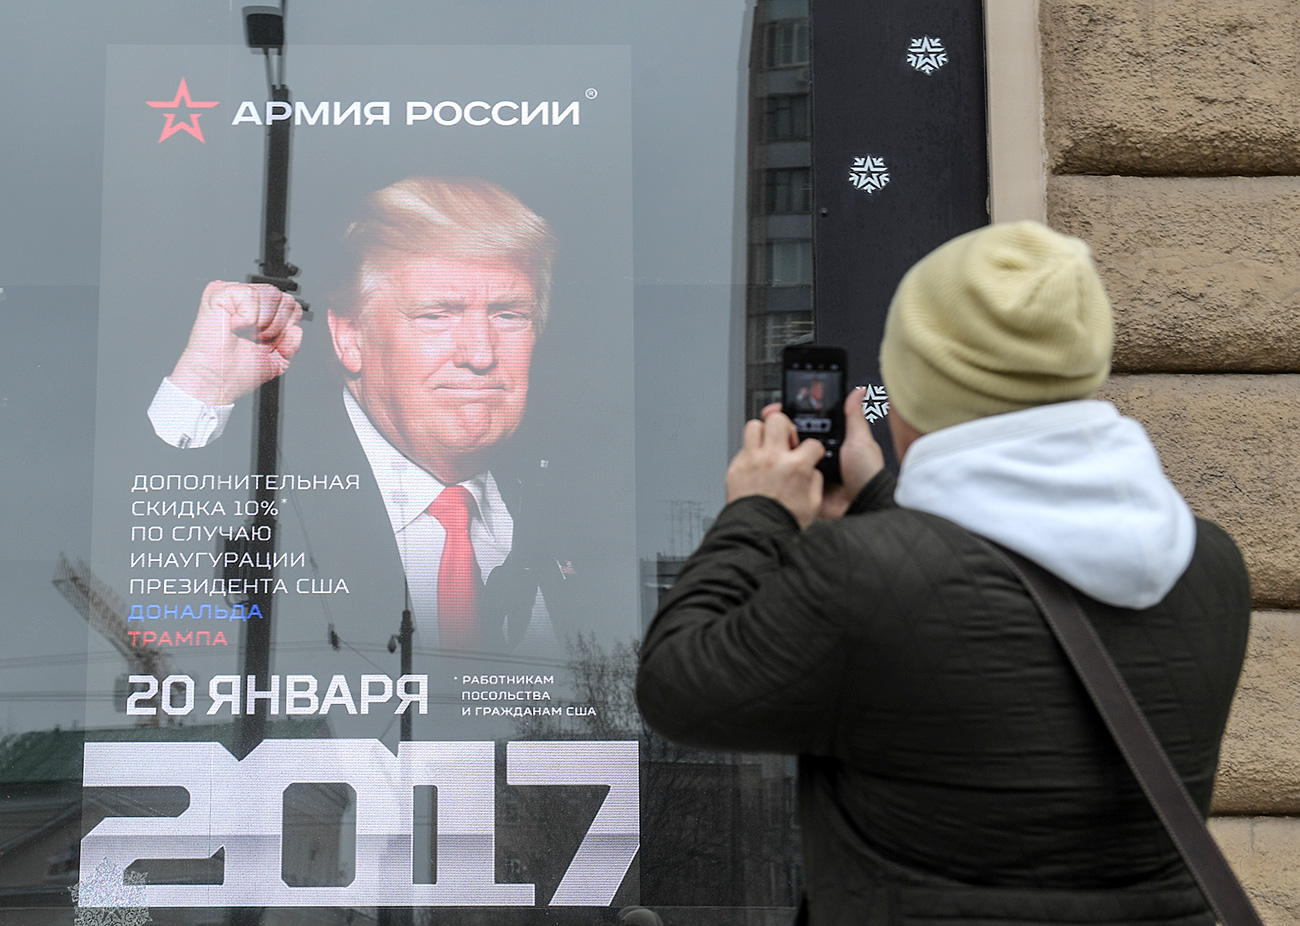 Мужчина стоит у витрины магазина "Армия России". Граждане США получат скидку в магазине "Армия России" в день инаугурации президента США Дональда Трампа.